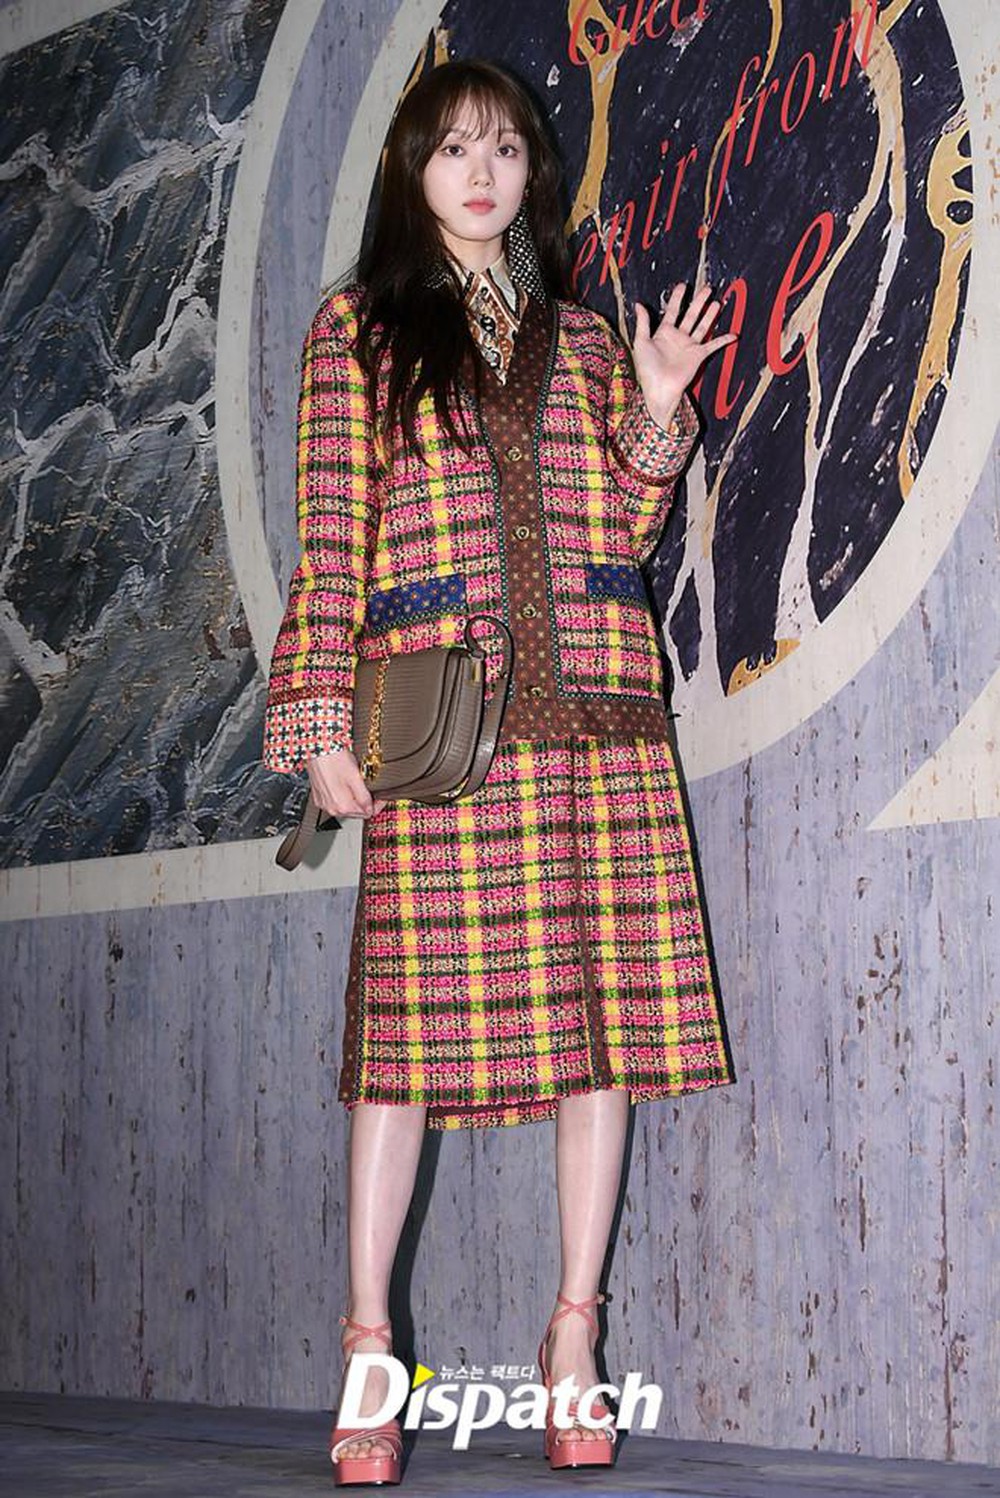 Lee Sung-Kyung mặc trang phục preppy kết hợp nhiều họa tiết bắt mắt